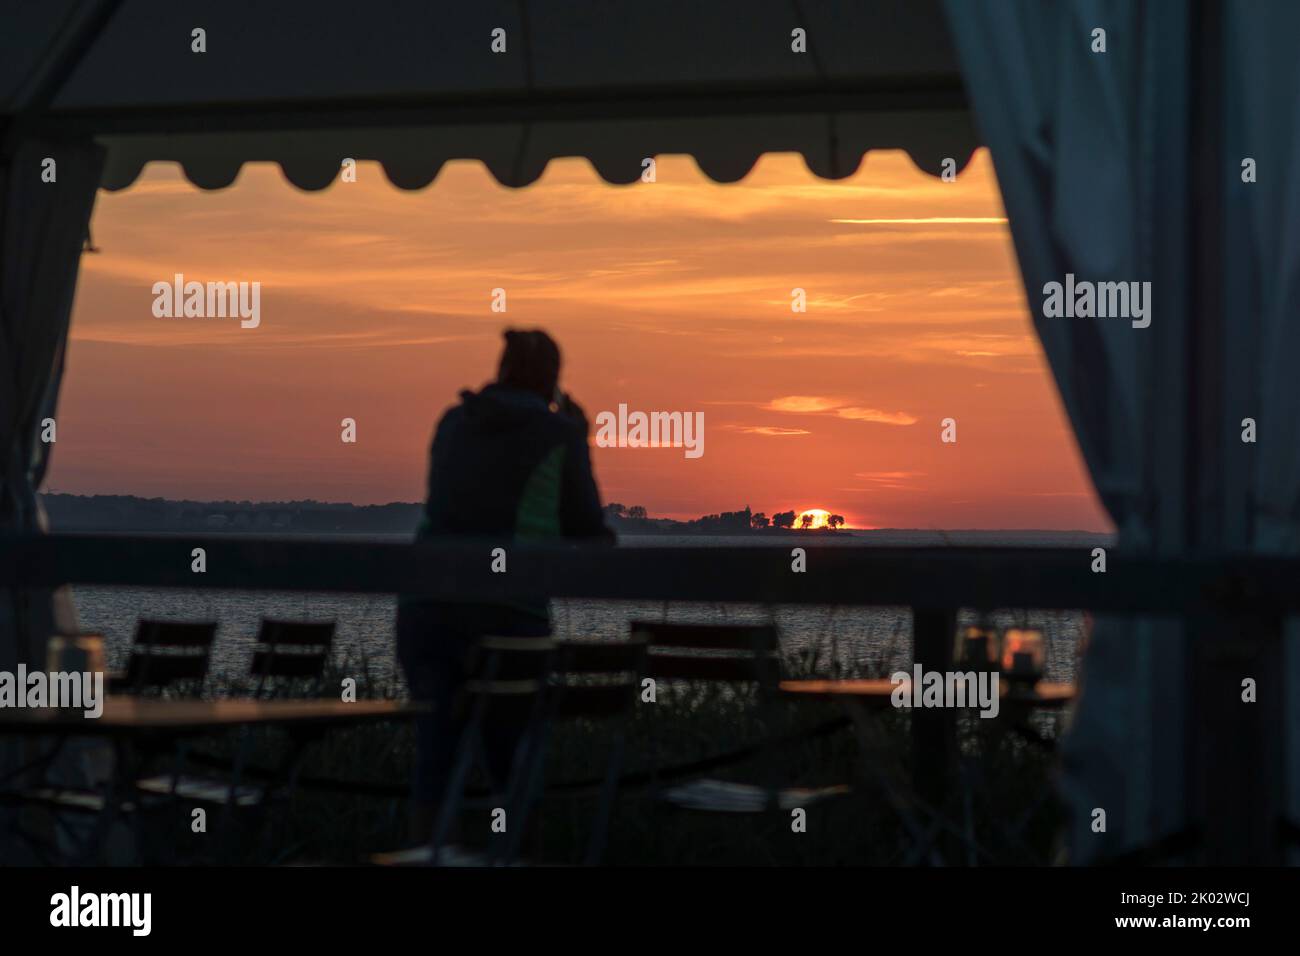 Personne sur la terrasse du restaurant donne sur le coucher de soleil sur la mer. Banque D'Images